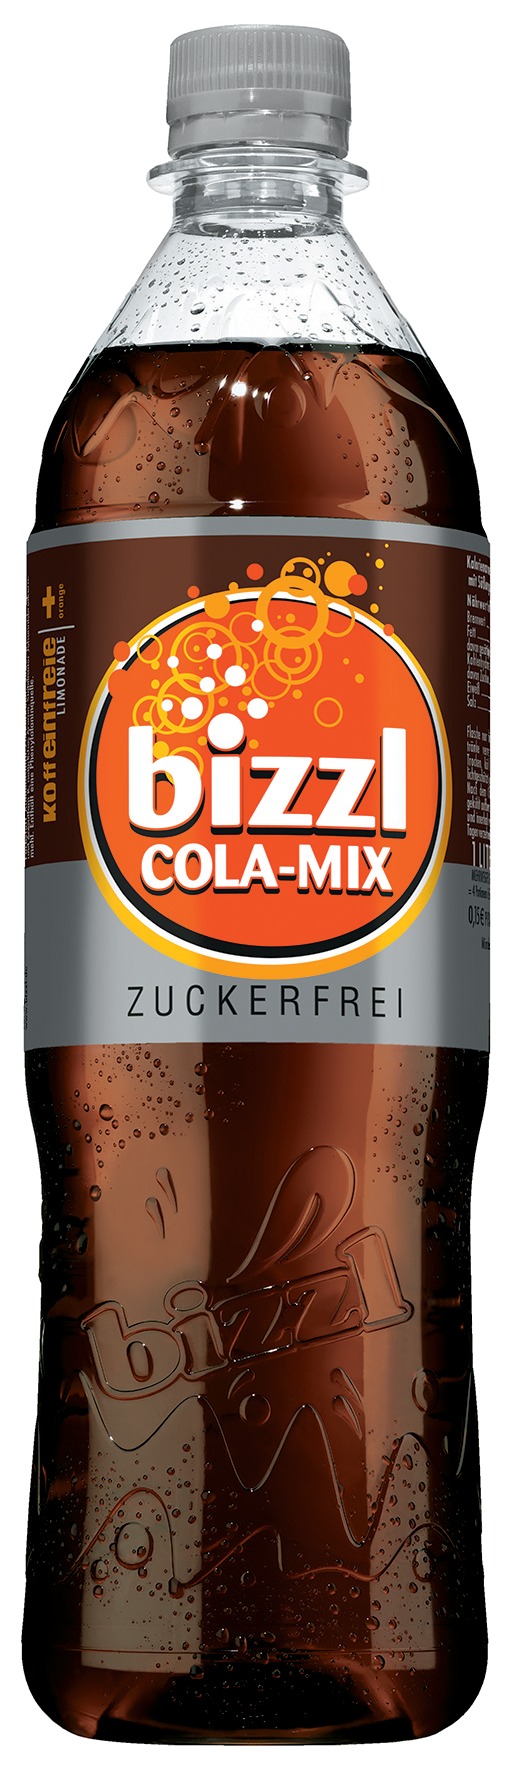 Bizzl Cola-Mix Zuckerfrei